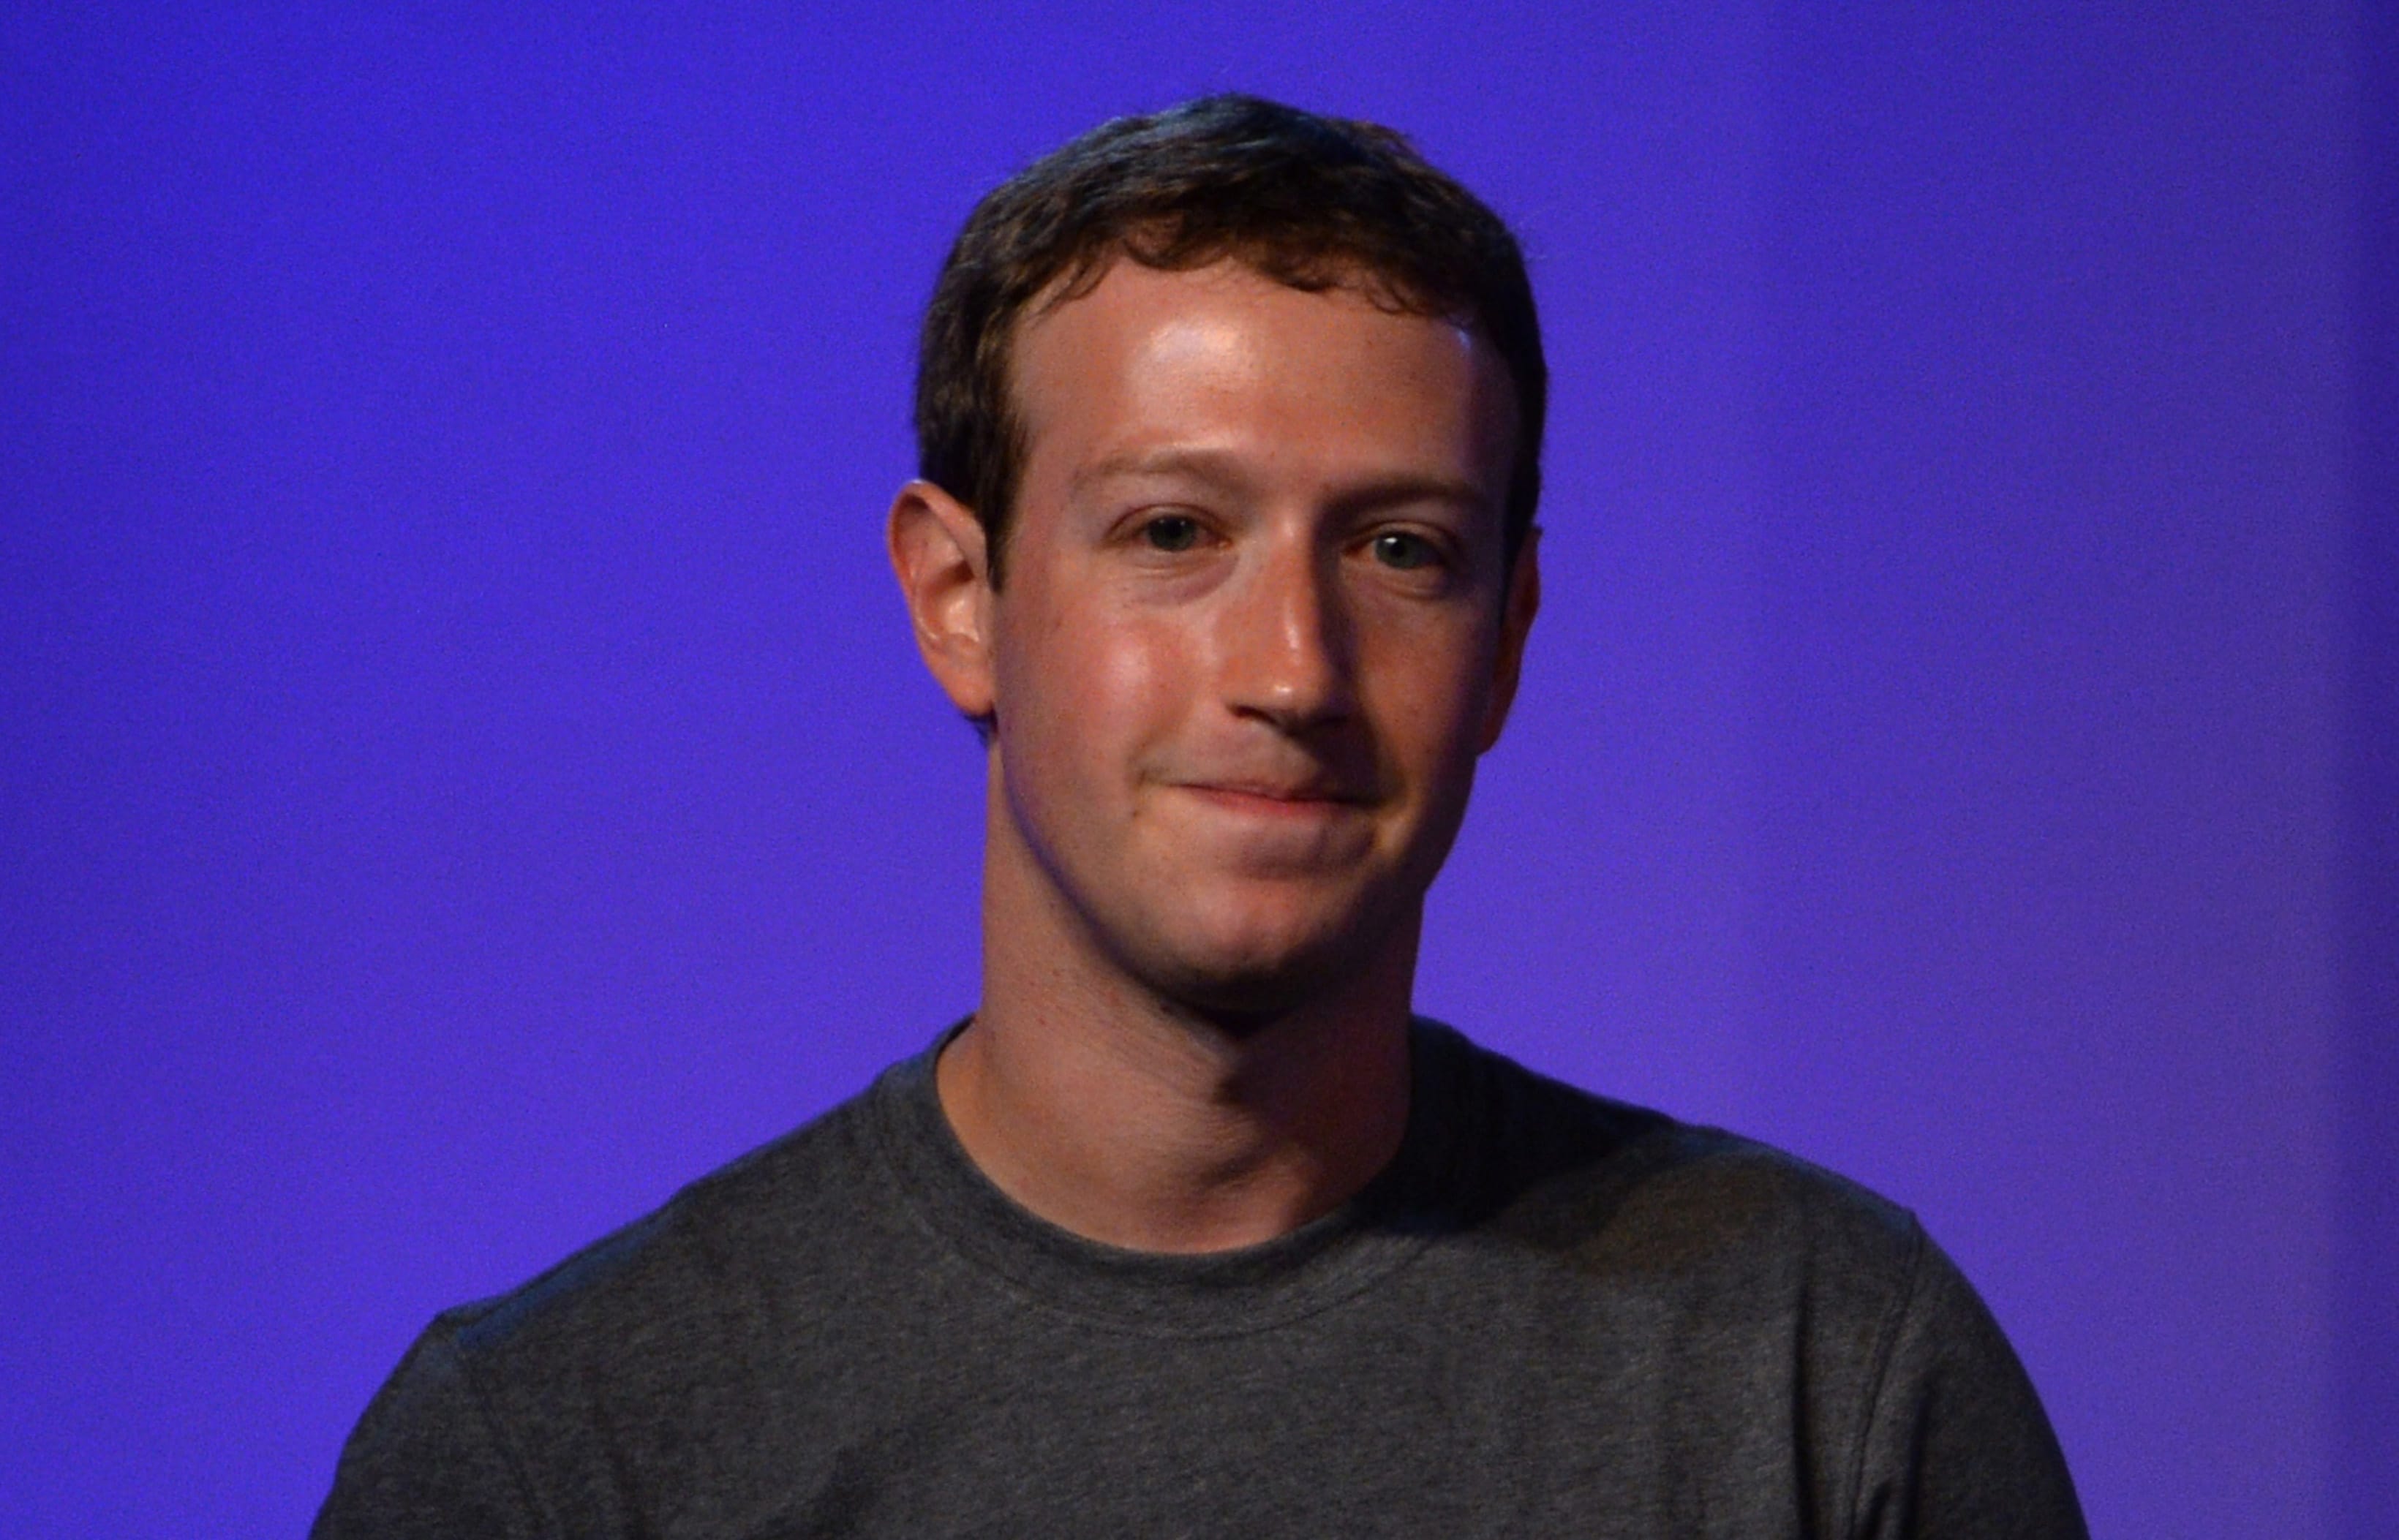 Facebook founder Mark Zuckerberg in India in New Delhi on 9 October, 2014